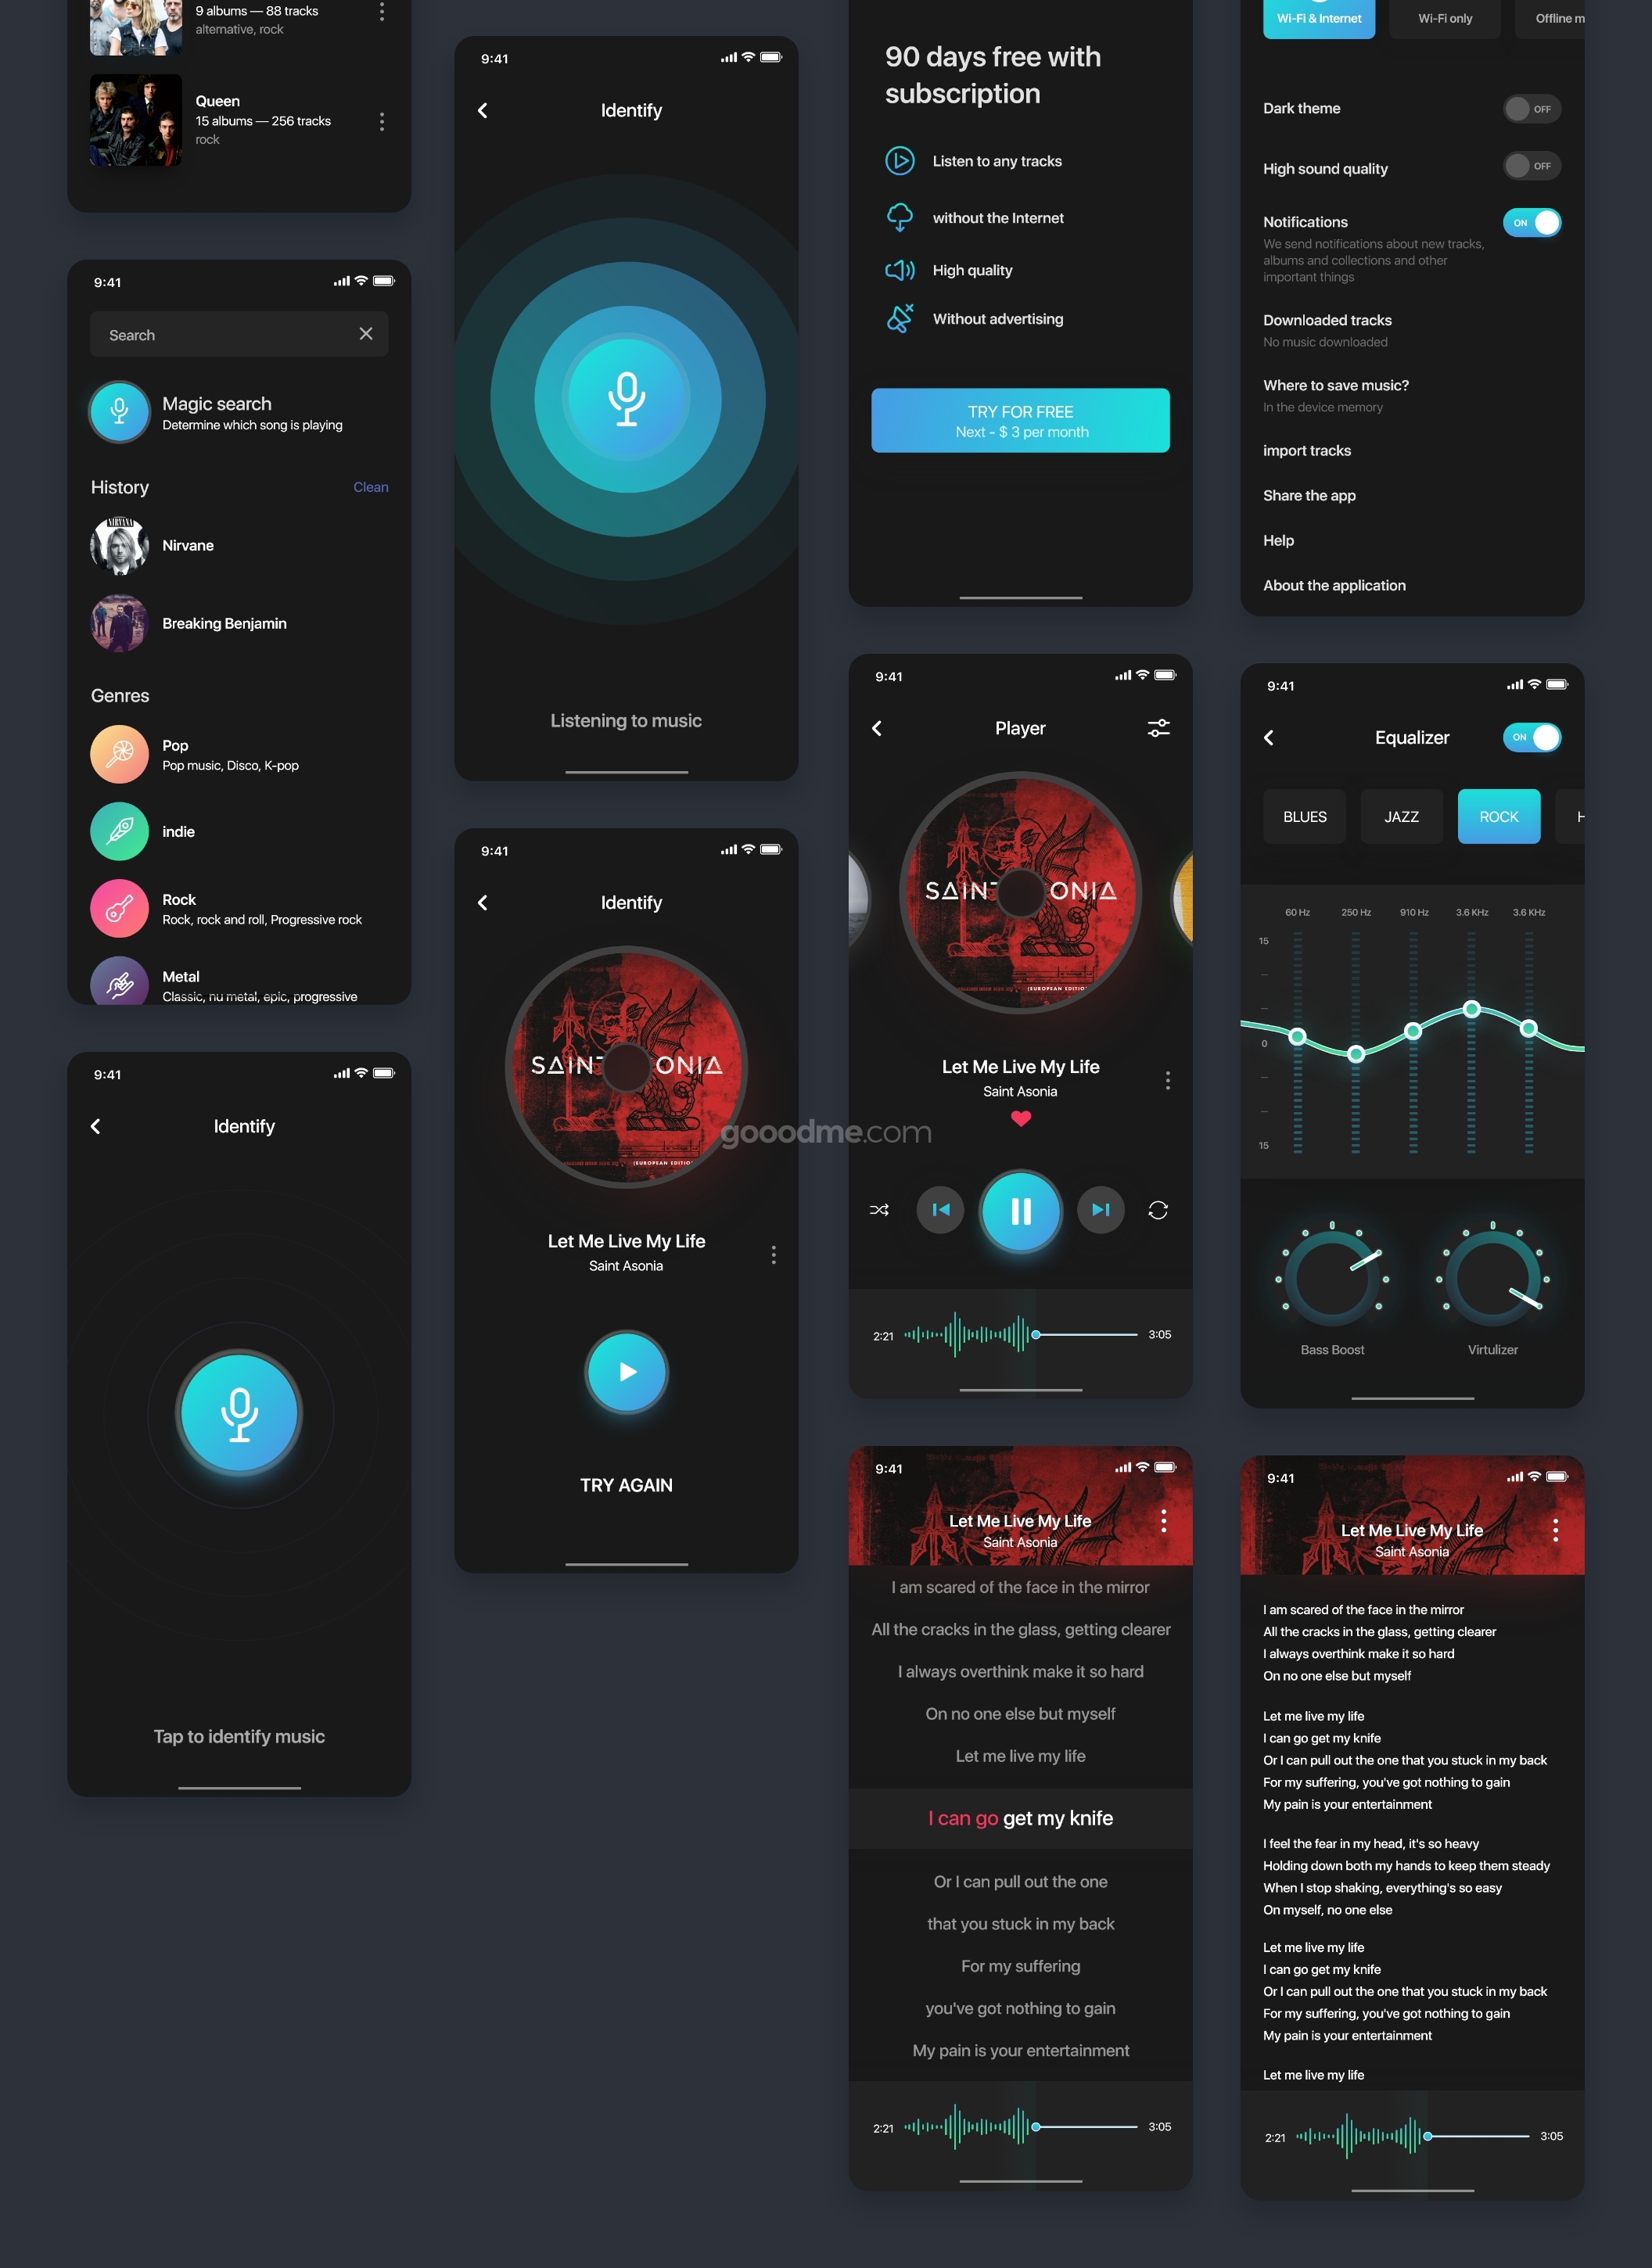 音乐服务类app界面设计UI素材模板Aura Music Service